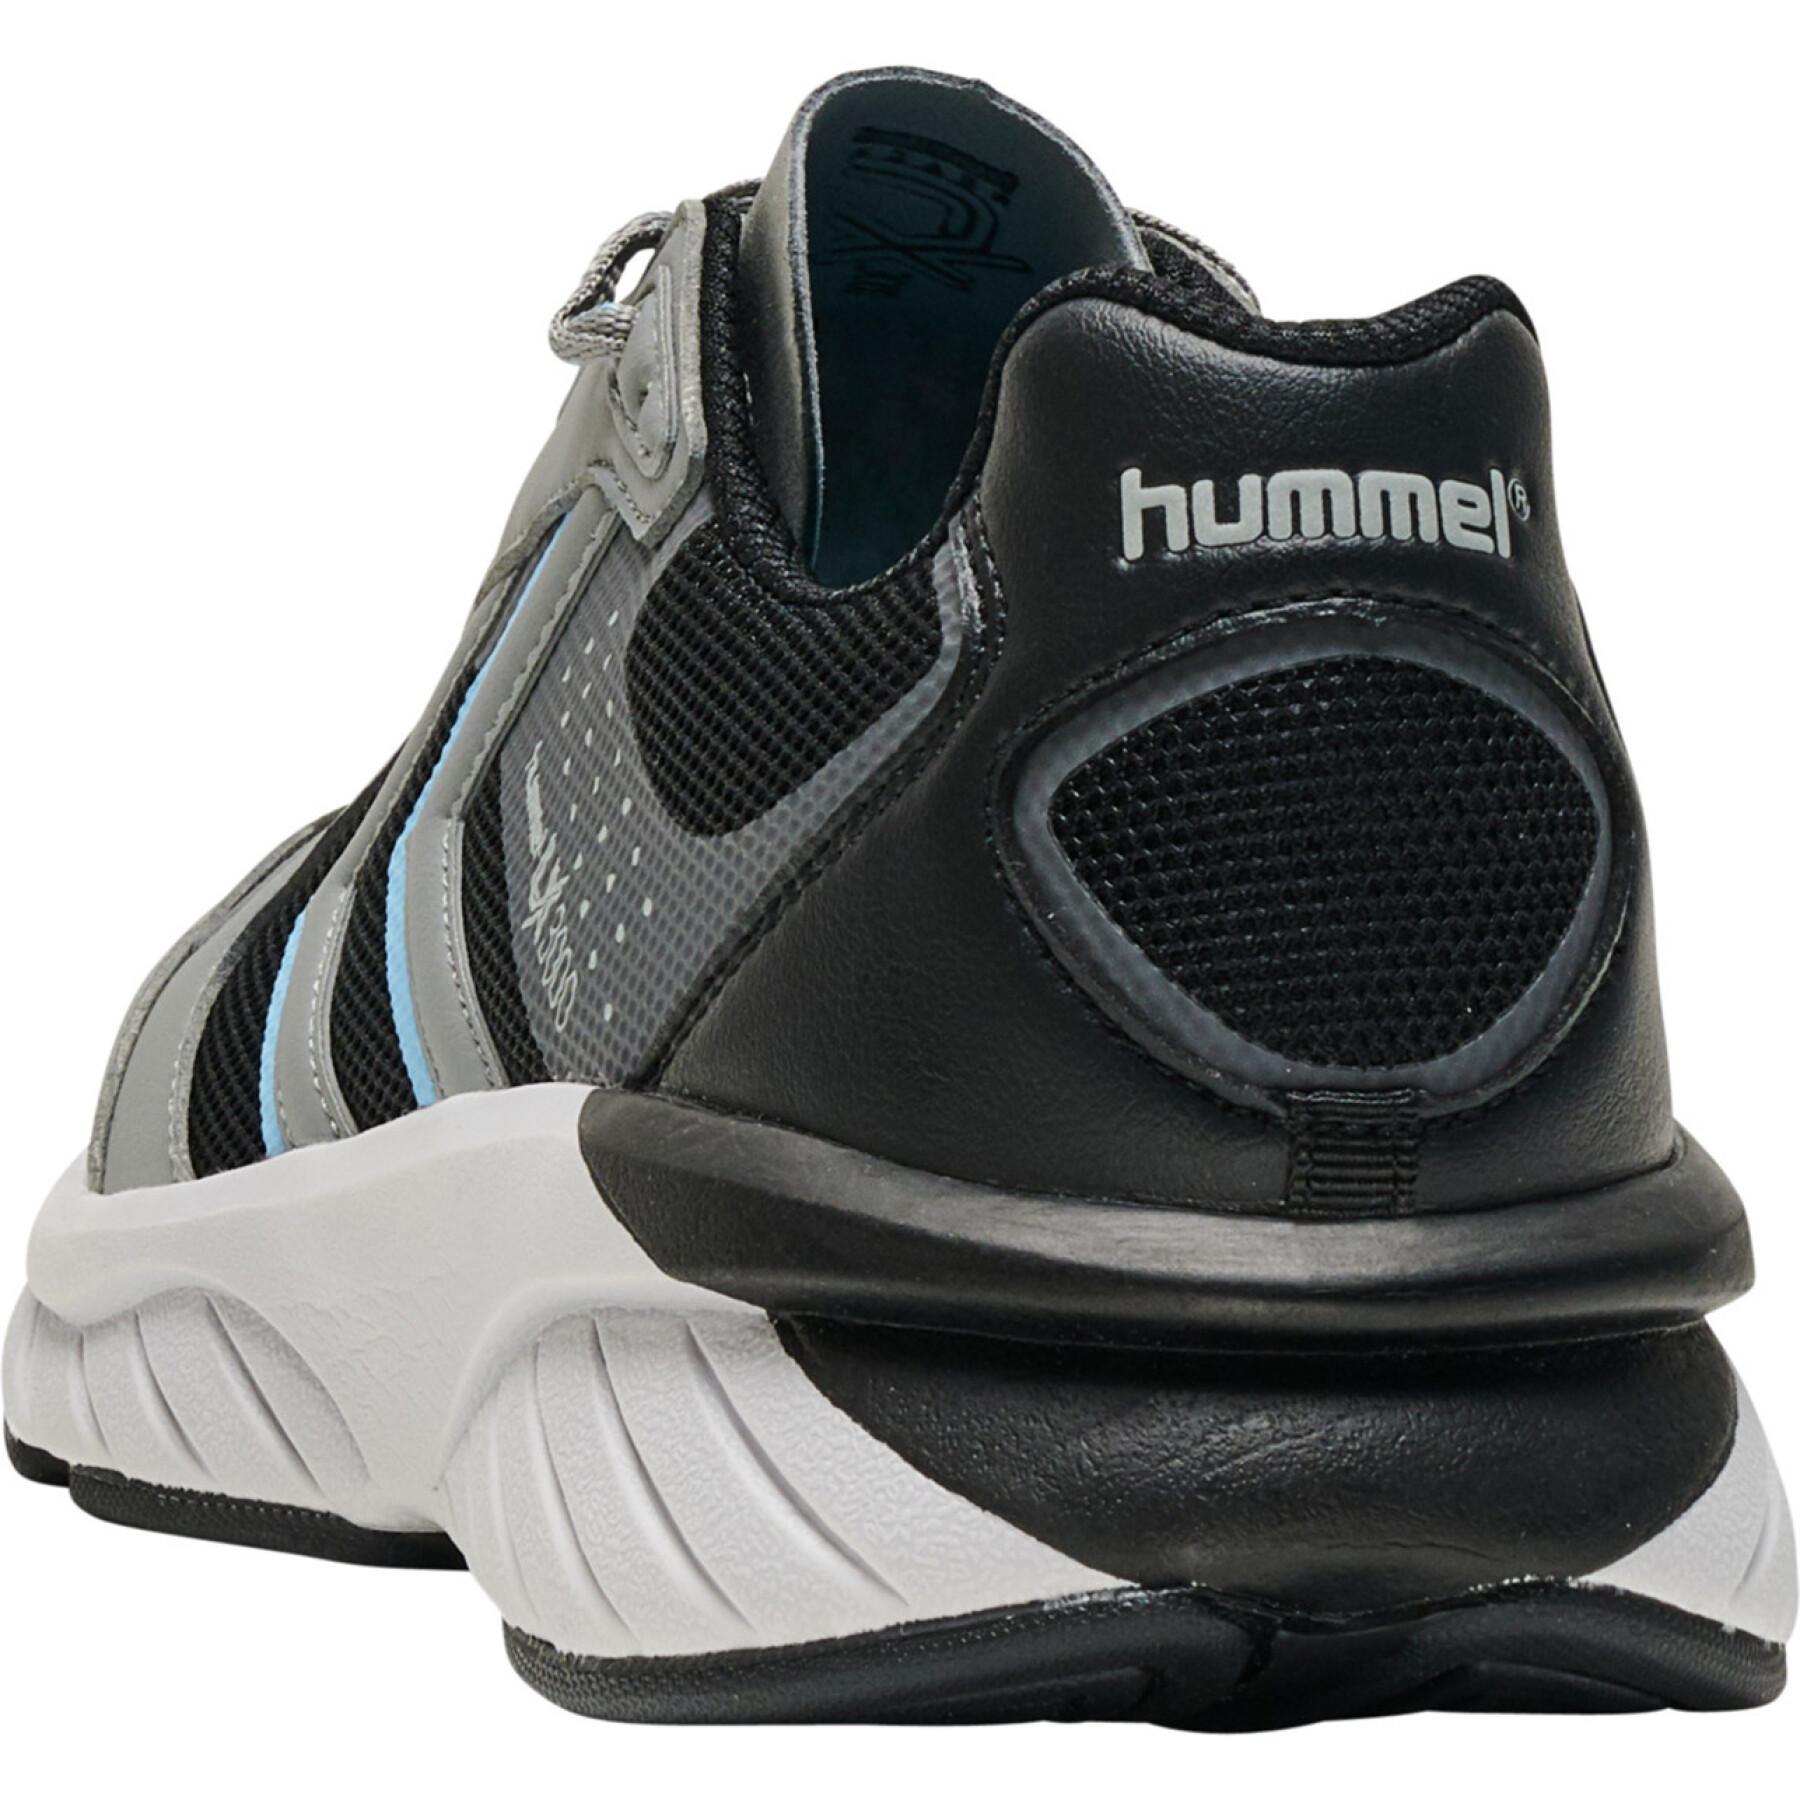 Schuhe Hummel Reach lx 3000